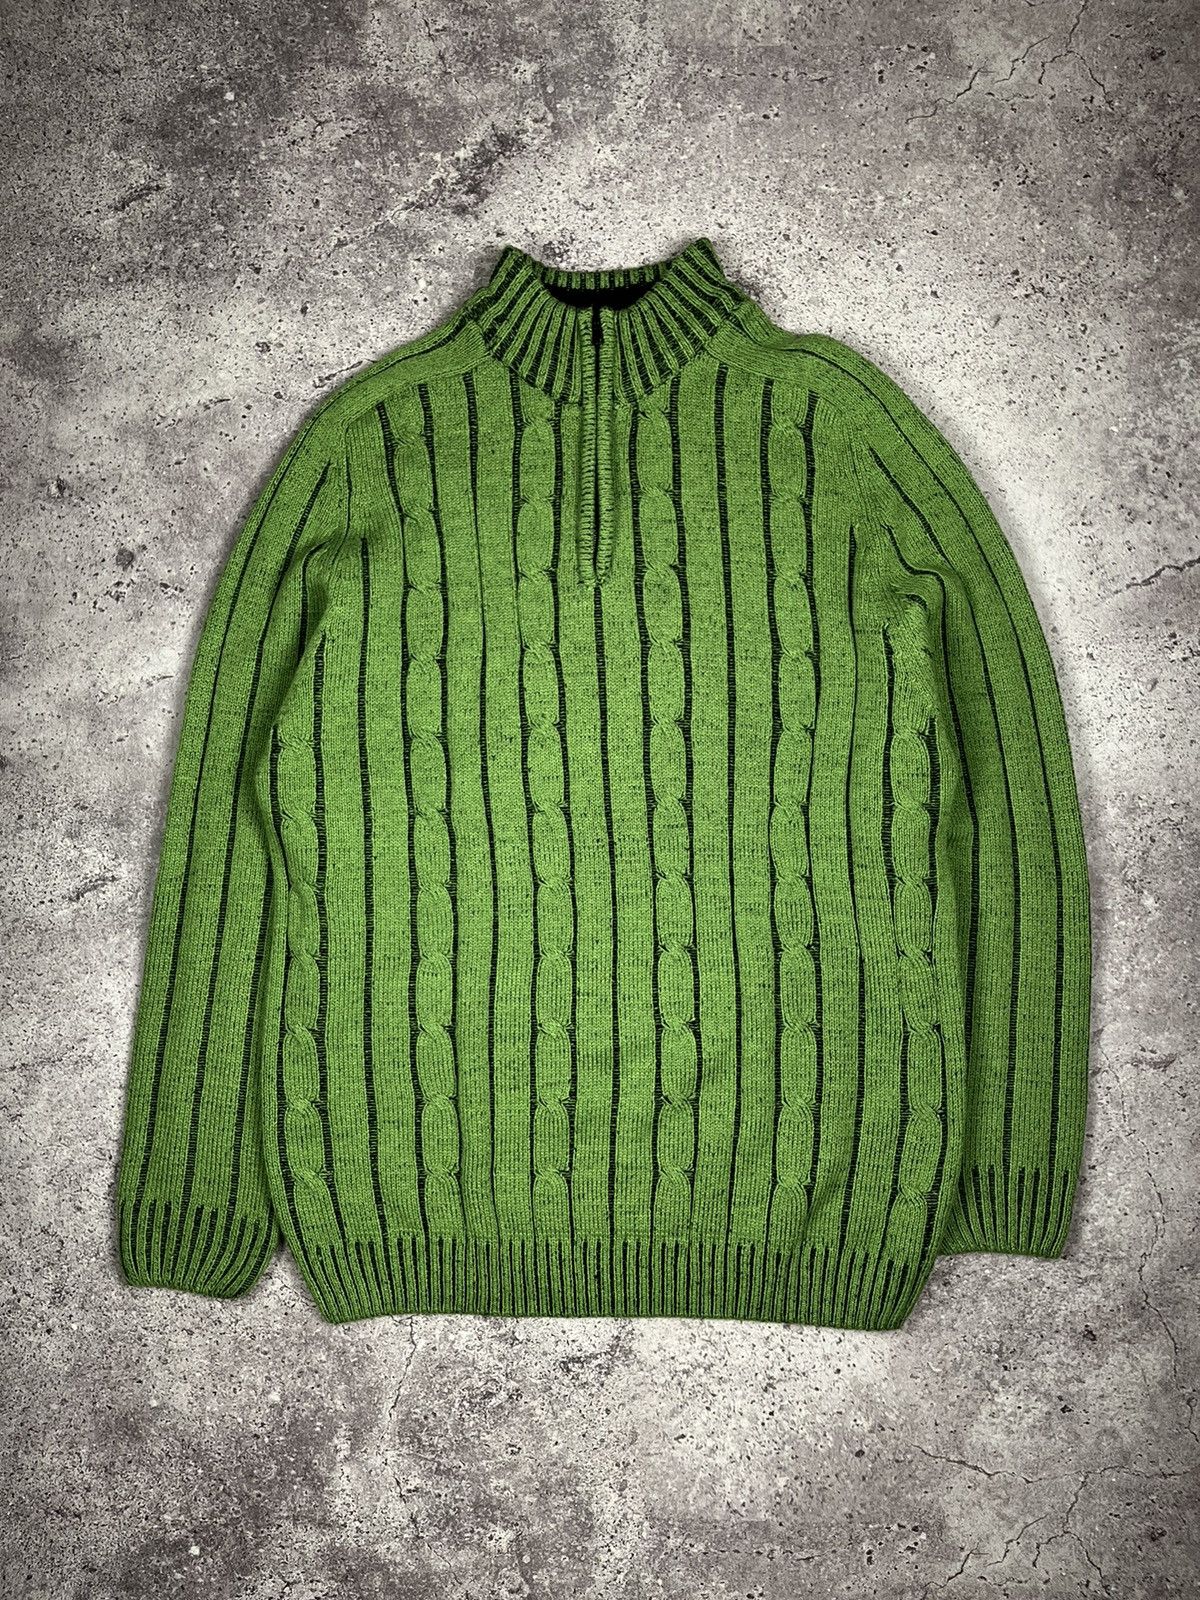 Pre-owned Diesel X Vintage Avantgarde Diesel Ribbed Knit Green Style Sweater